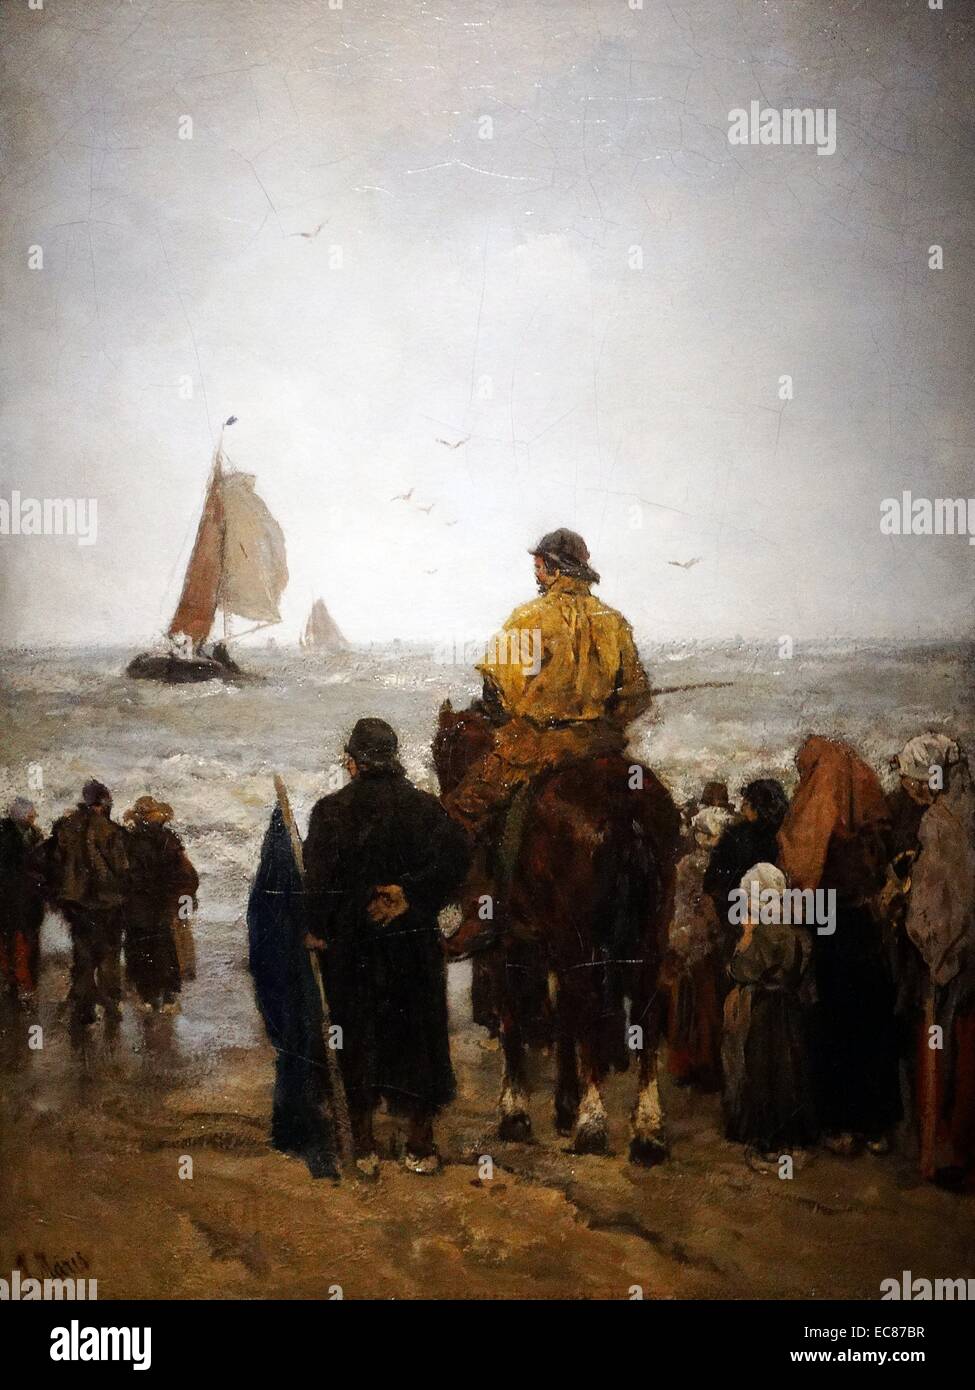 Gemälde mit dem Titel "Ankunft der Boote' von Jacob Maris (1837-1899) niederländischer Maler, der mit seinen Brüdern Willem und Matthijs zu was gekommen ist, wie die Haager Schule der Maler bekannt sein gehörte gemalt. Vom 1884. Stockfoto